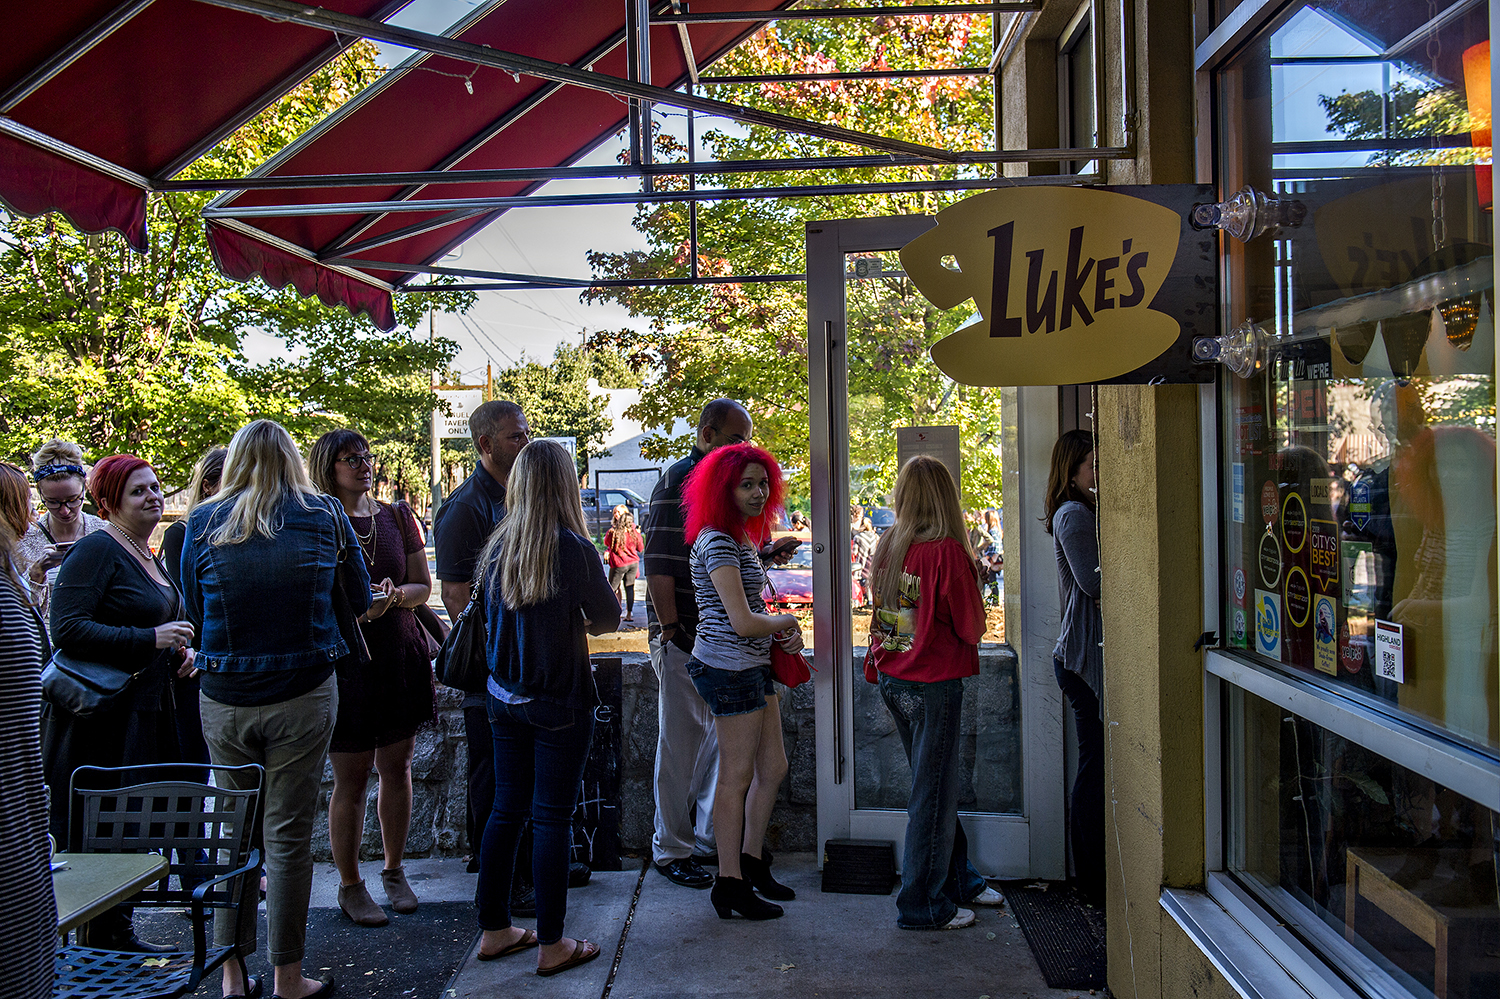 The Luke's Diner takeover at JavaVino in Atlanta.